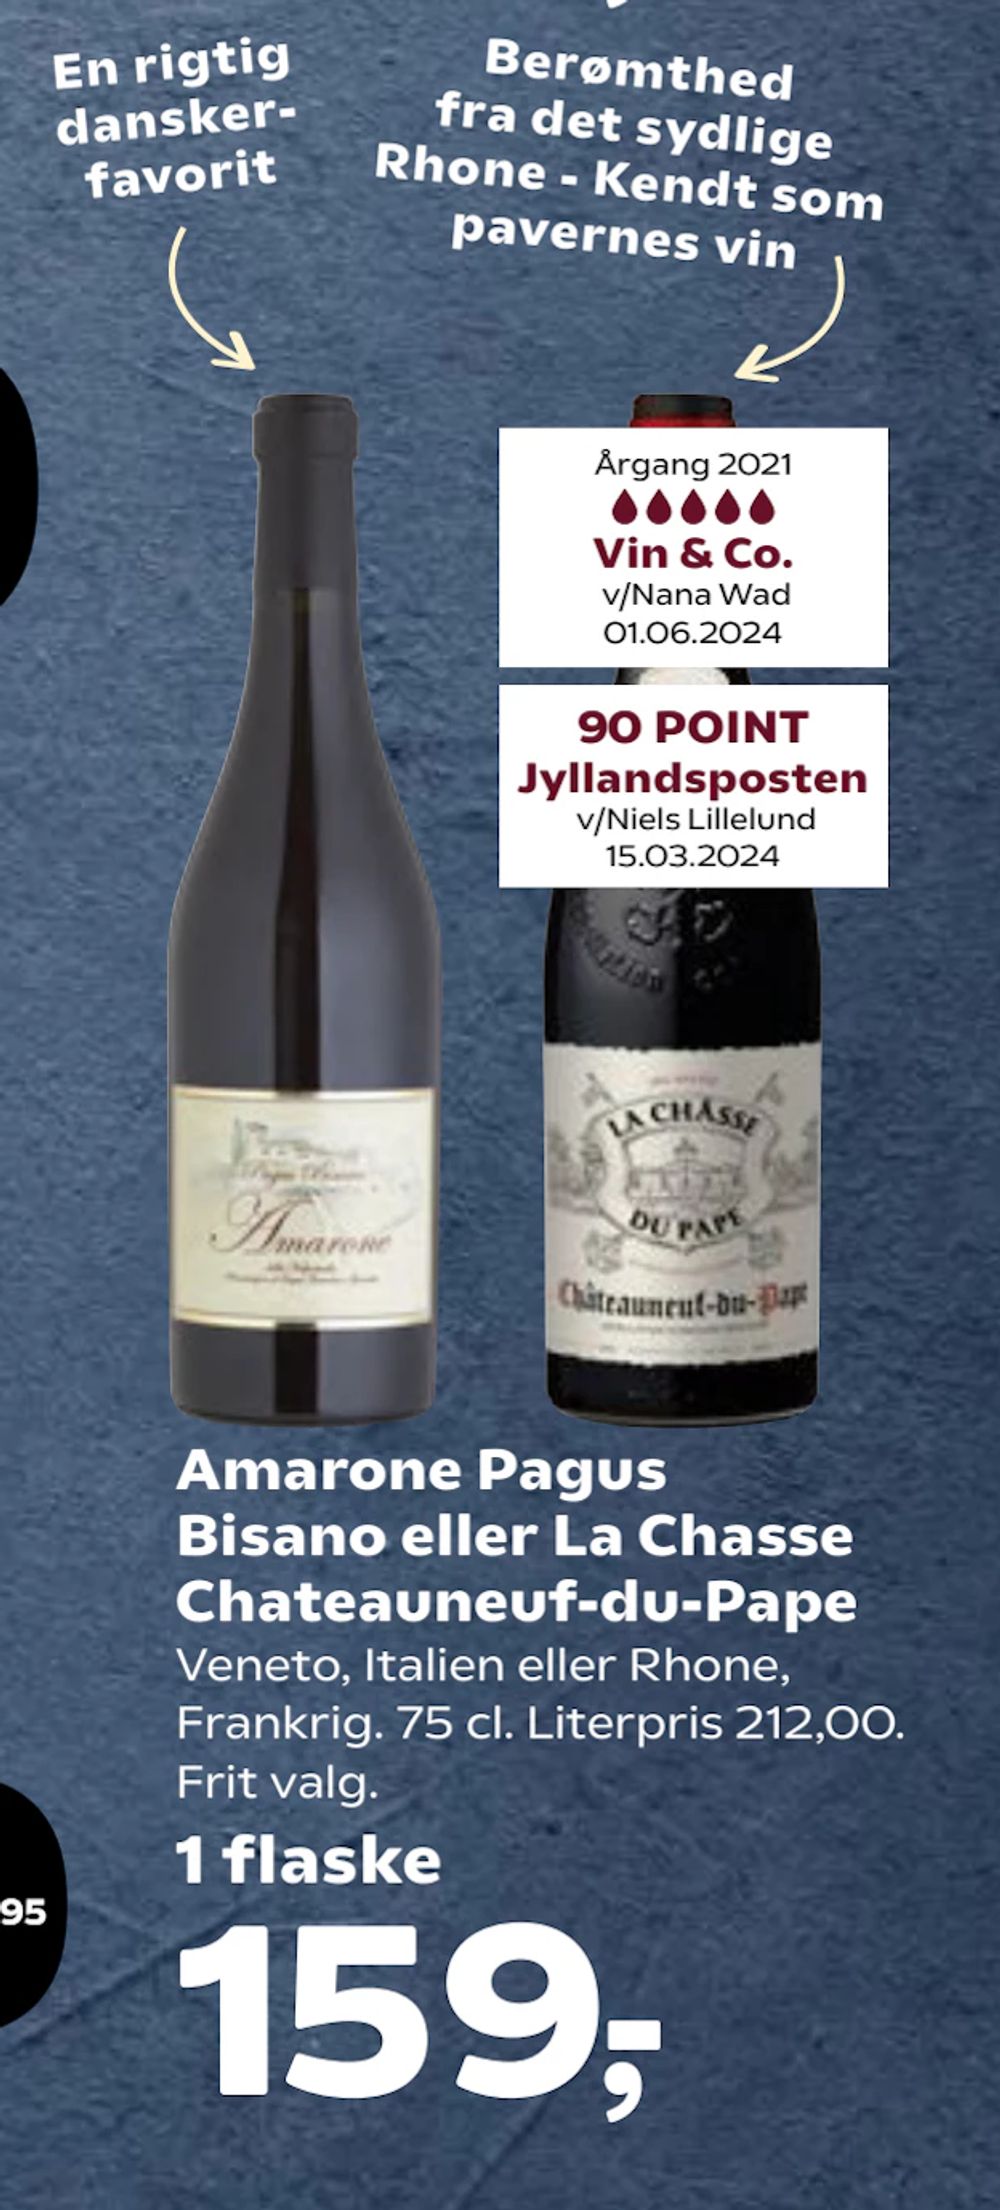 Tilbud på Amarone Pagus Bisano eller La Chasse Chateauneuf-du-Pape fra SuperBrugsen til 159 kr.